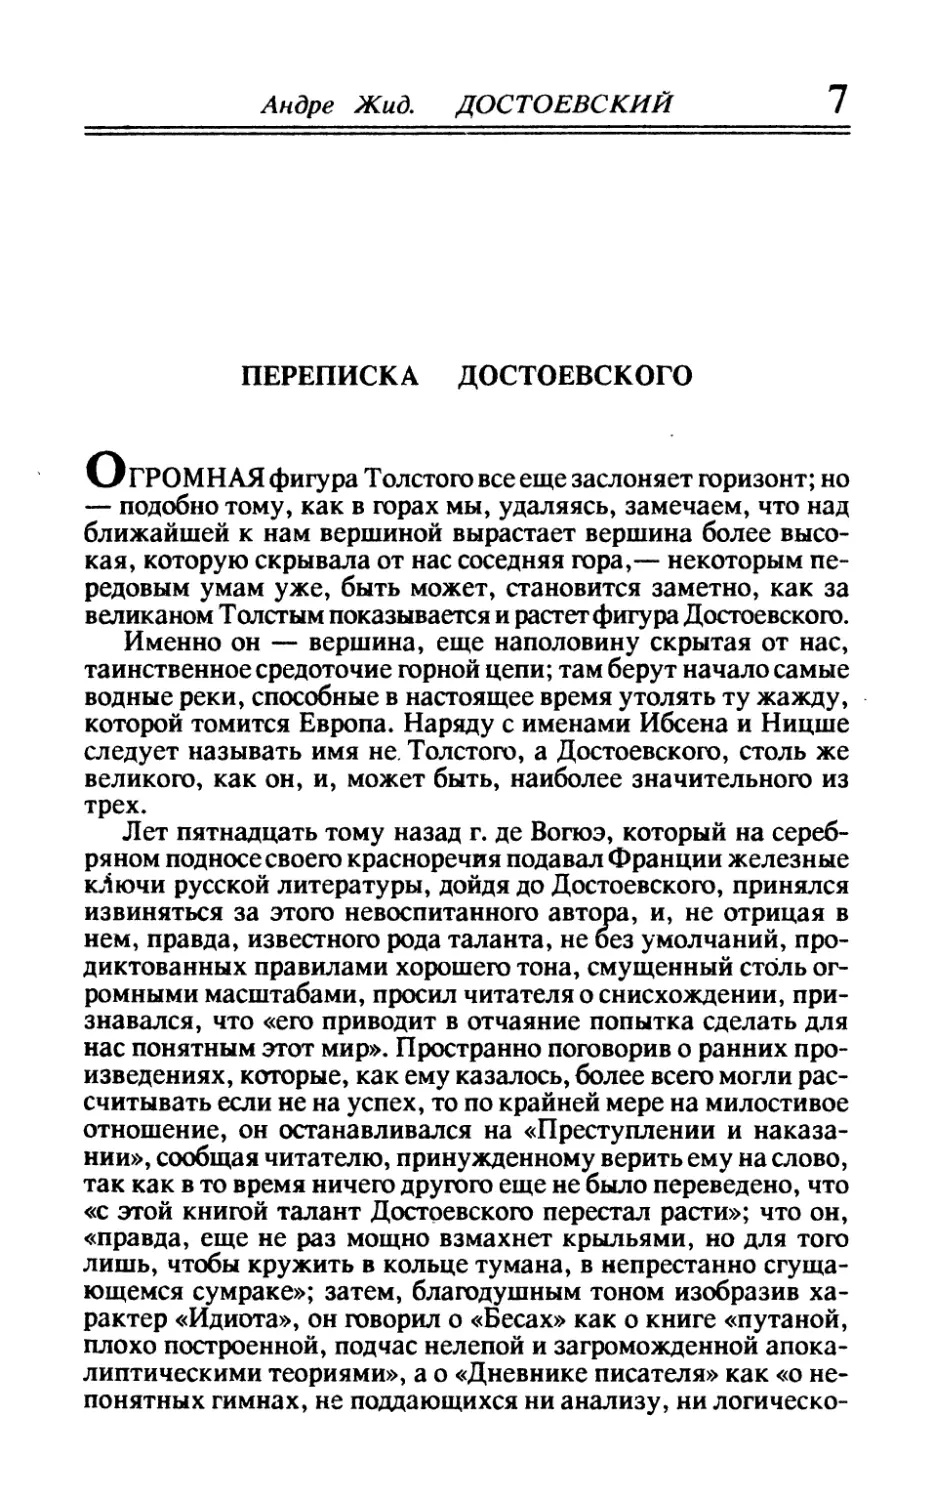 Переписка Достоевского